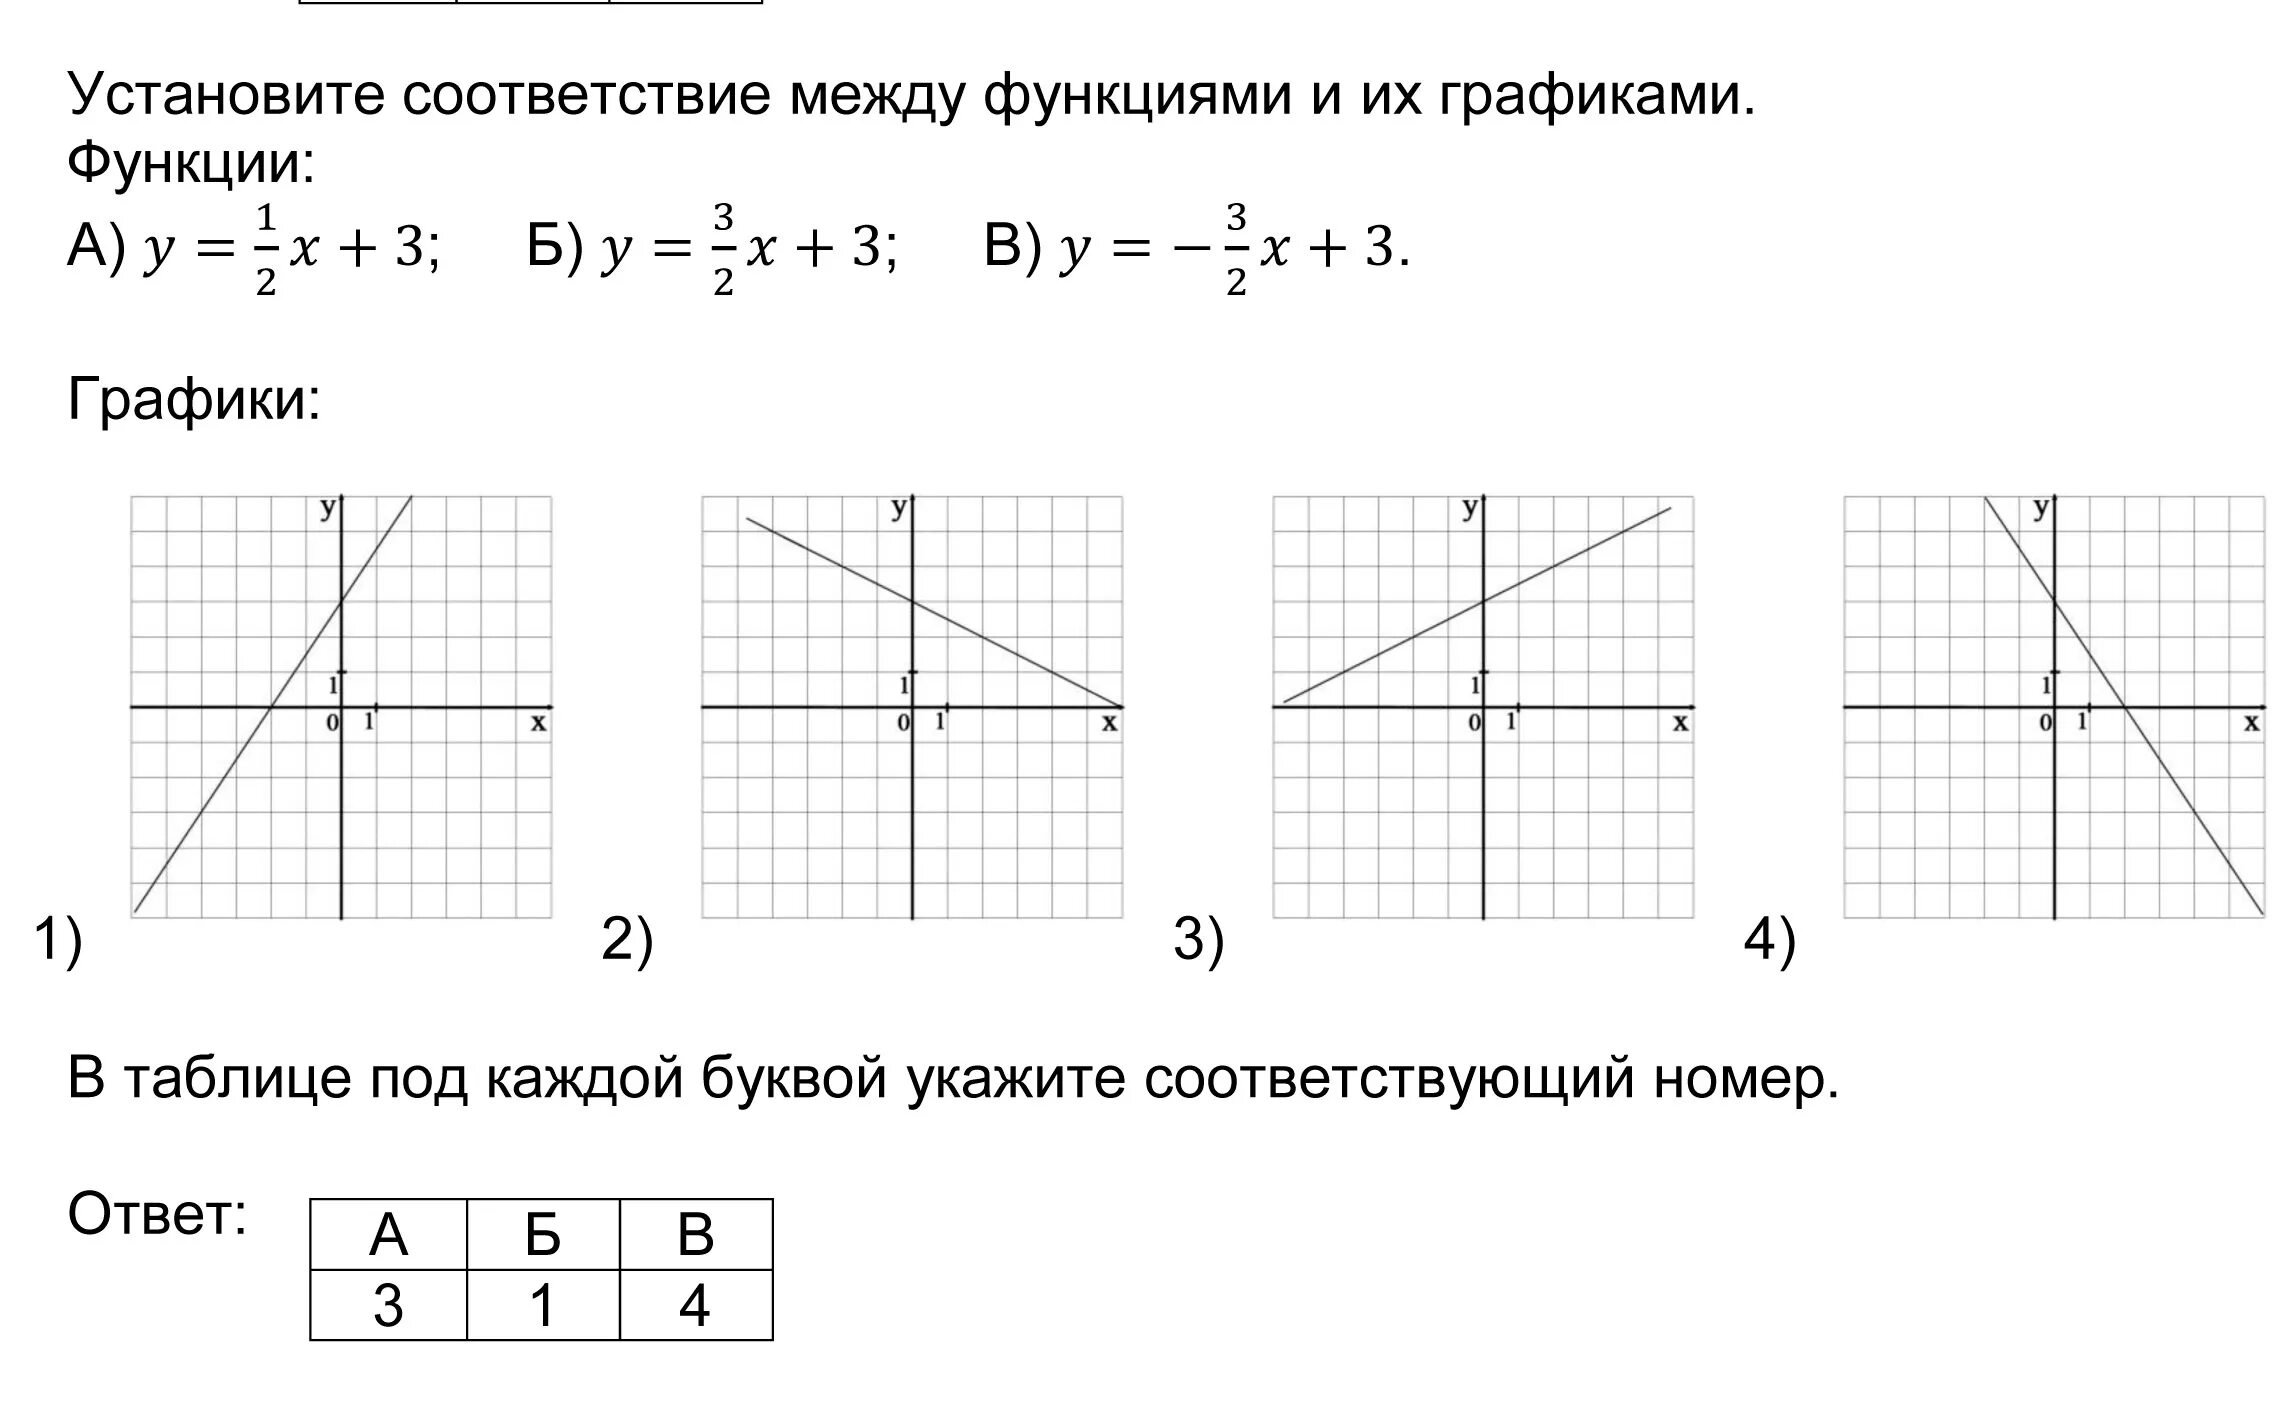 Установить соответствие графиков. Установить соответствие между функцией и графиком y=-x+2. Установите соответствие между функциями и их графиками у 2 3х-5. Установите соответствие между функциями и их графиками функции. Установите соответствие между функциями и их графиками y x2-2x y x2+2x.